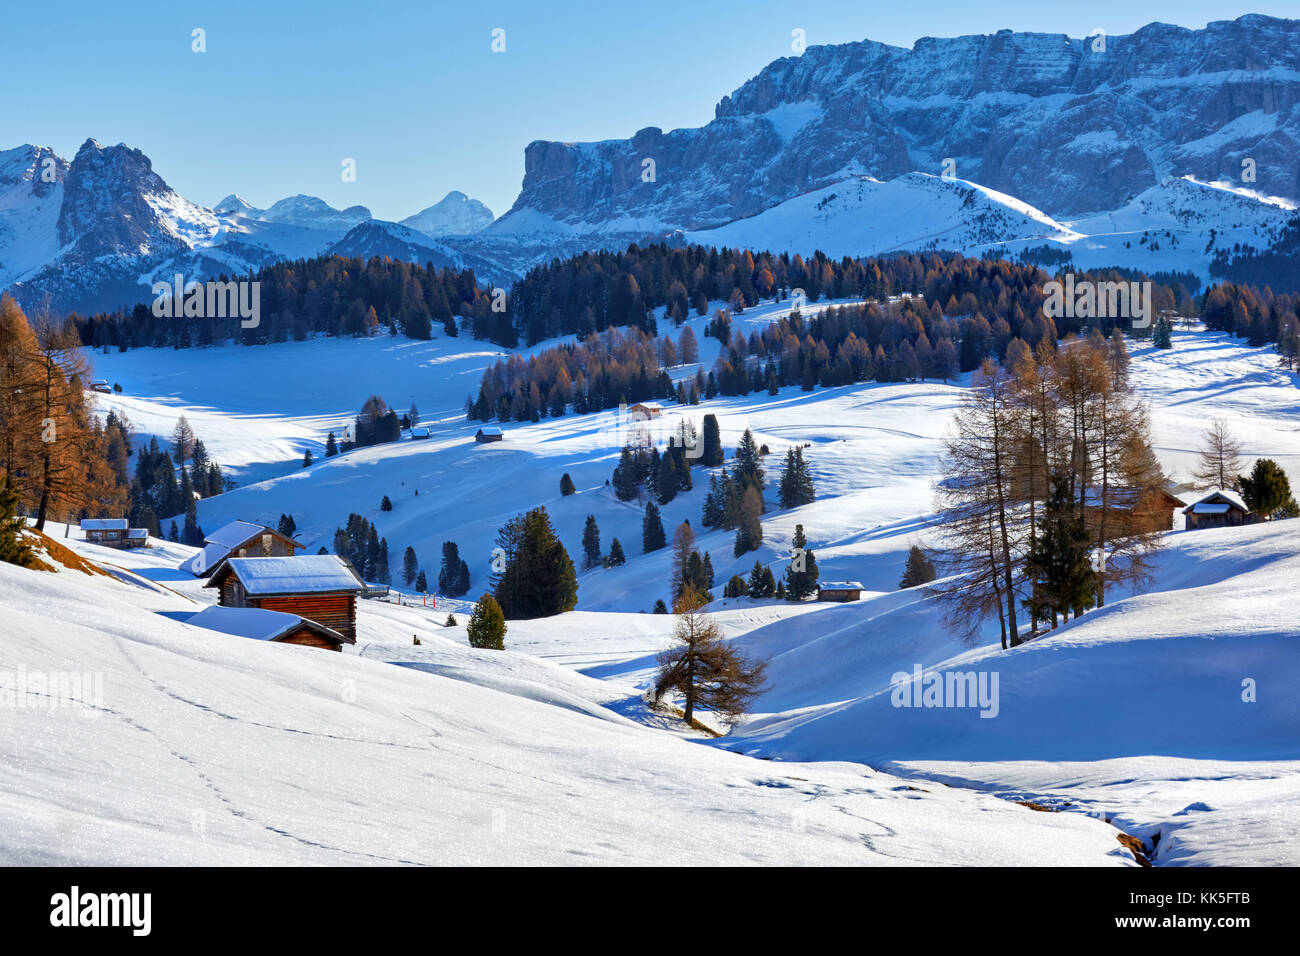 Amanecer en invierno Alpe di Siusi Dolomitas, Italia Foto de stock